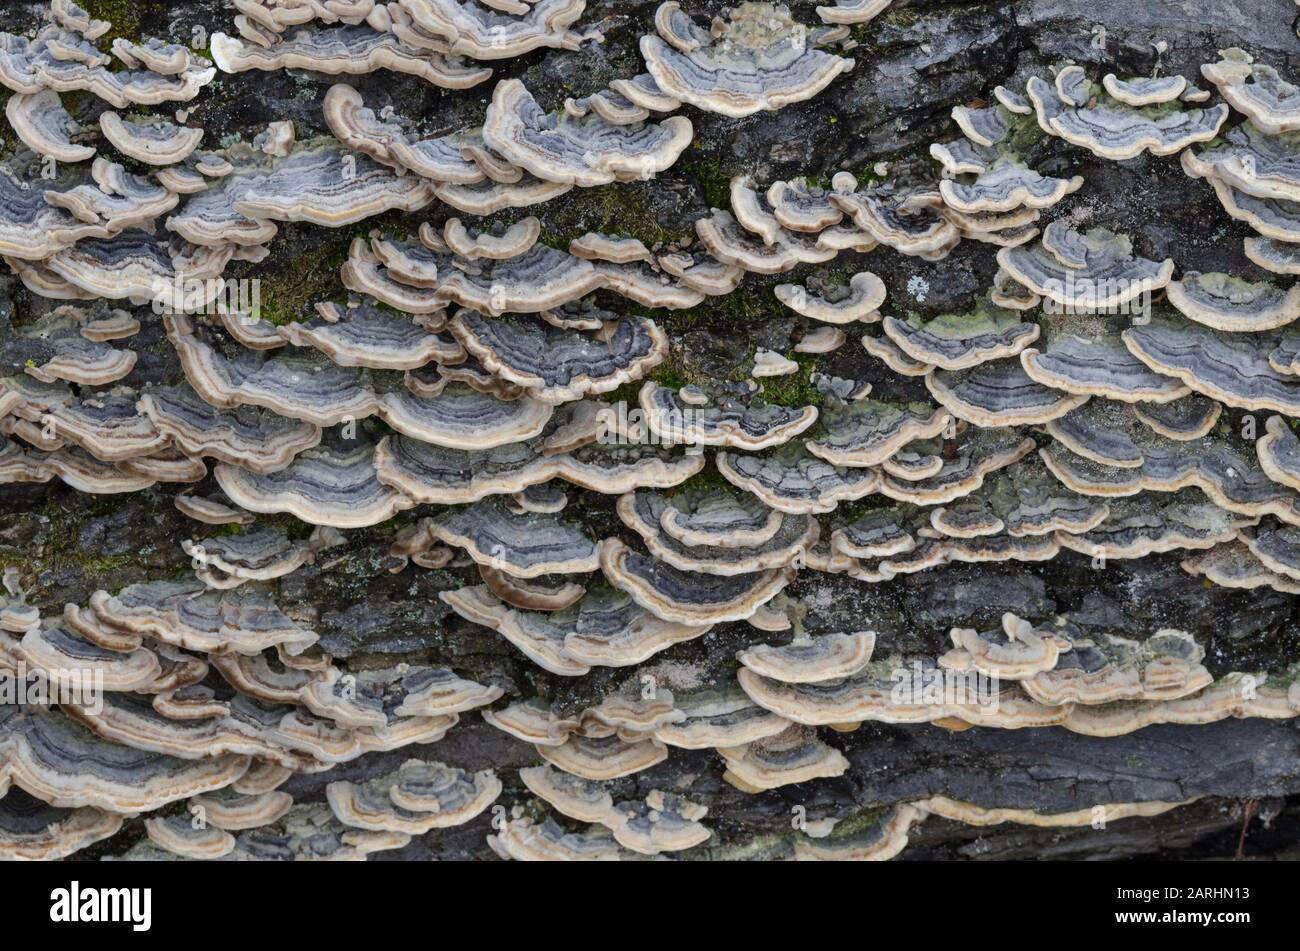 Turkey Tail Fungus, Trametes versicolor Stock Photo